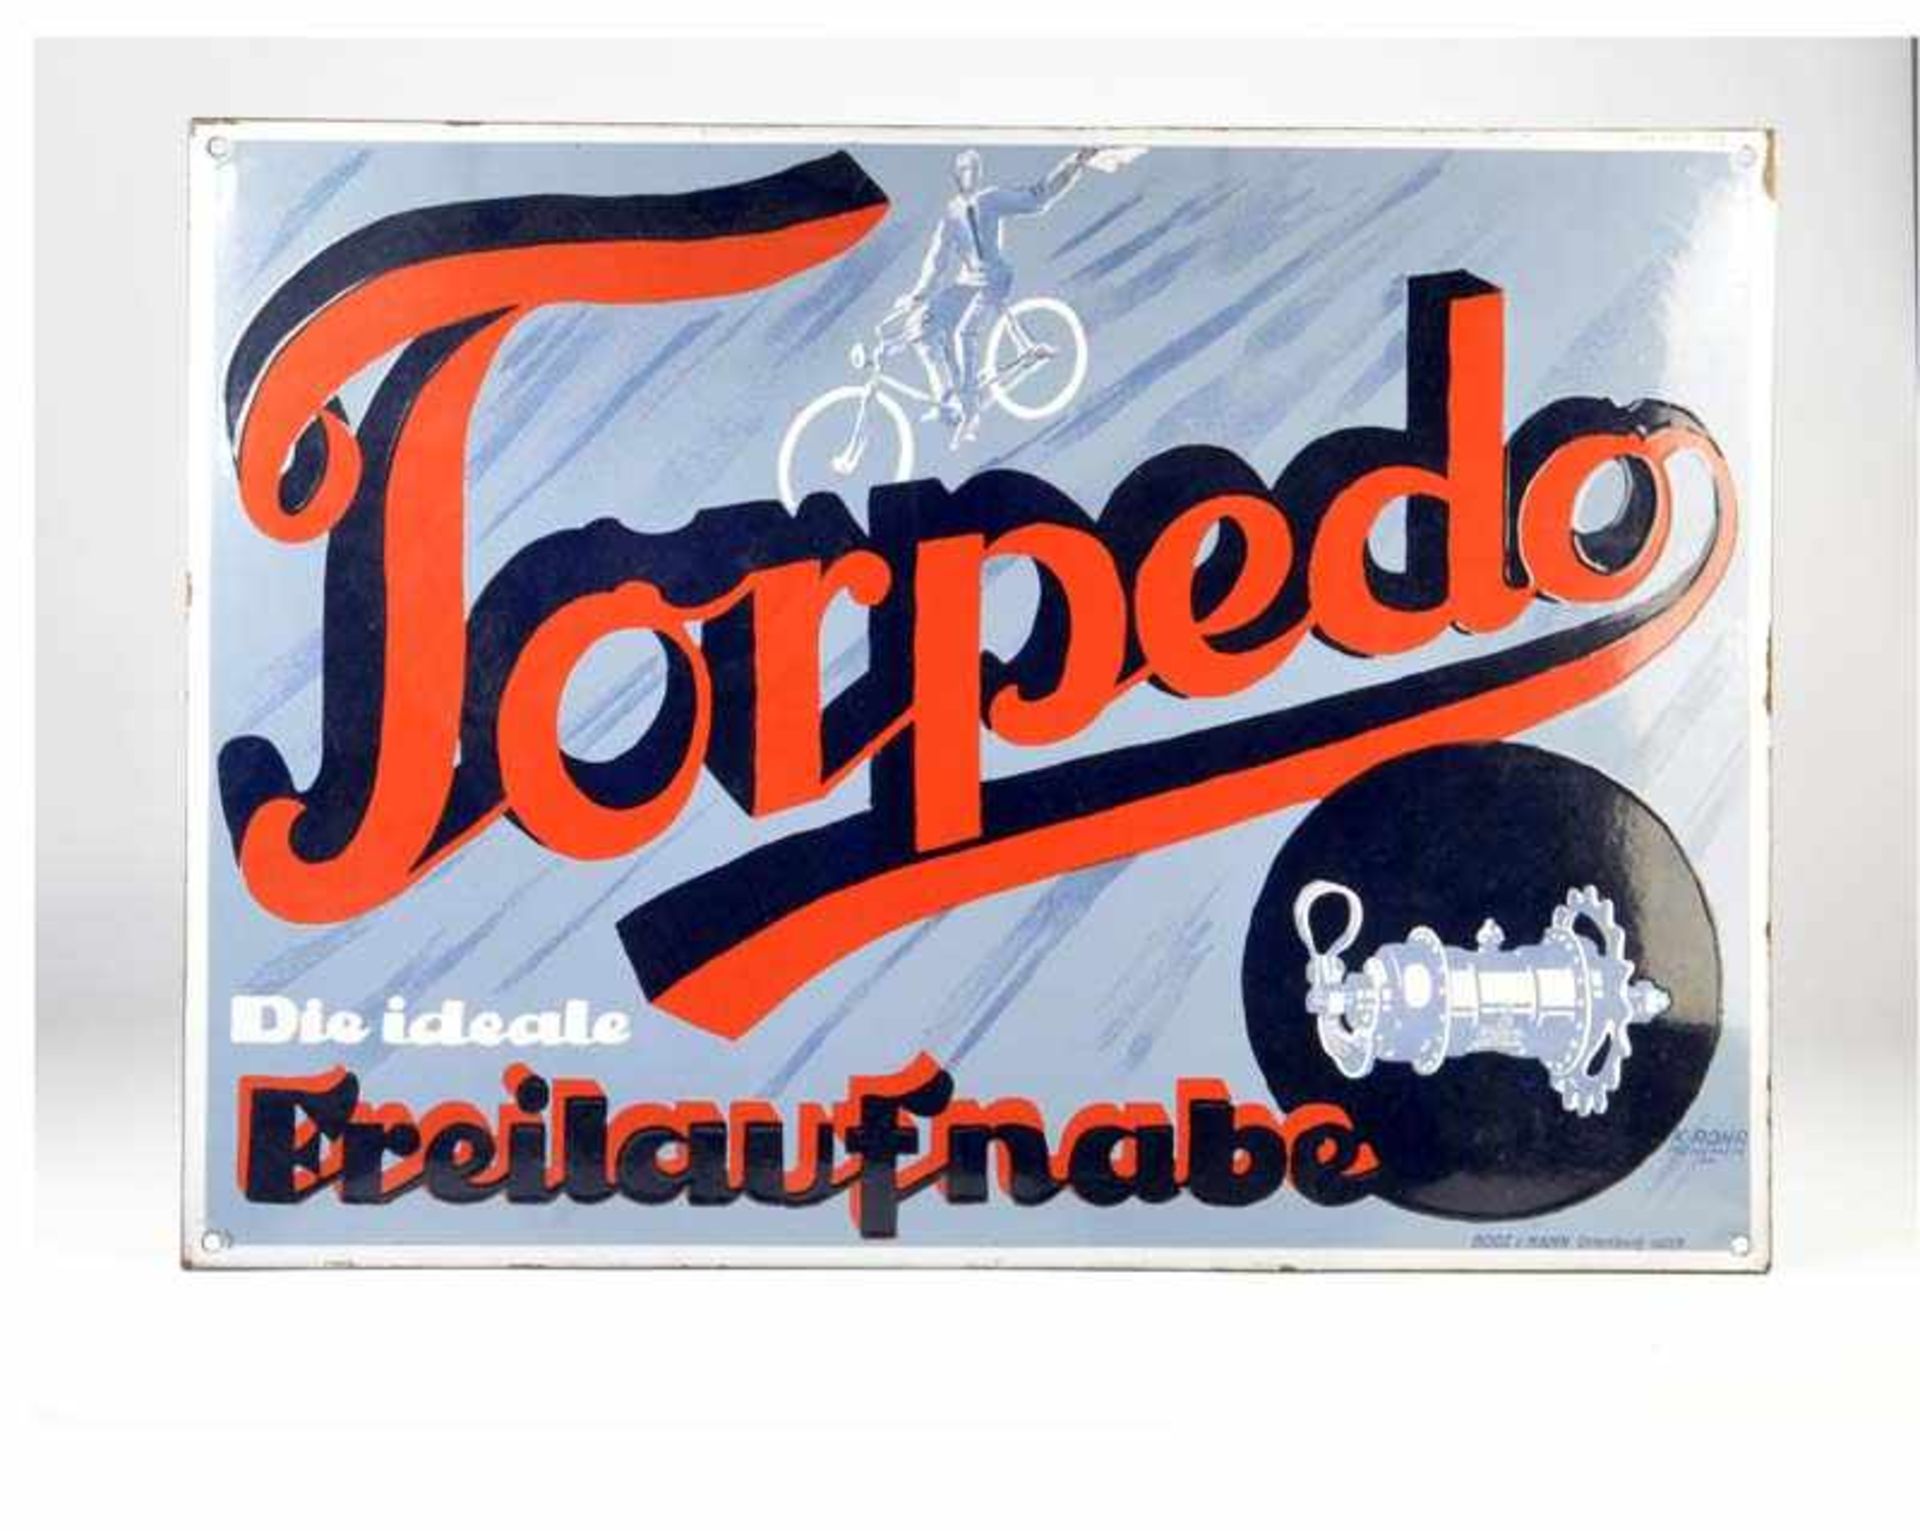 Emailleschild "Torpedo-Die ideale Freilaufnabe", 64x88 cm, abgekantet, Boos & Hahn, Z 1-Enamel